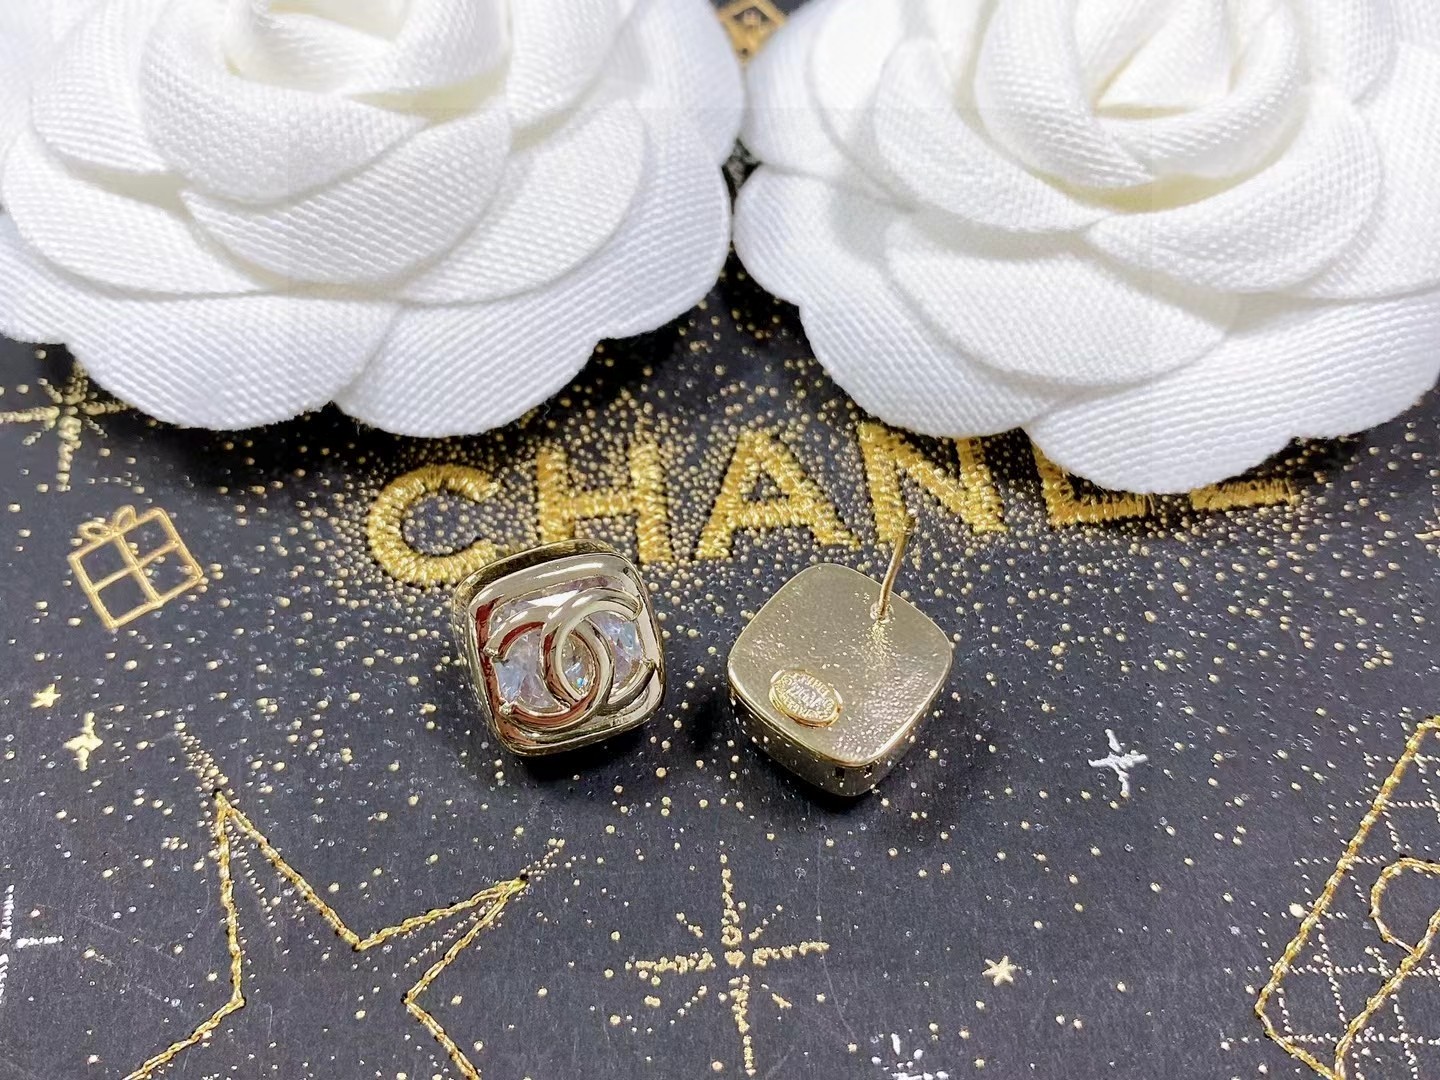 Chanel香奈儿中古字母耳钉小香家的款式真心无需多介绍每一款都超好看精致大方非常显气质